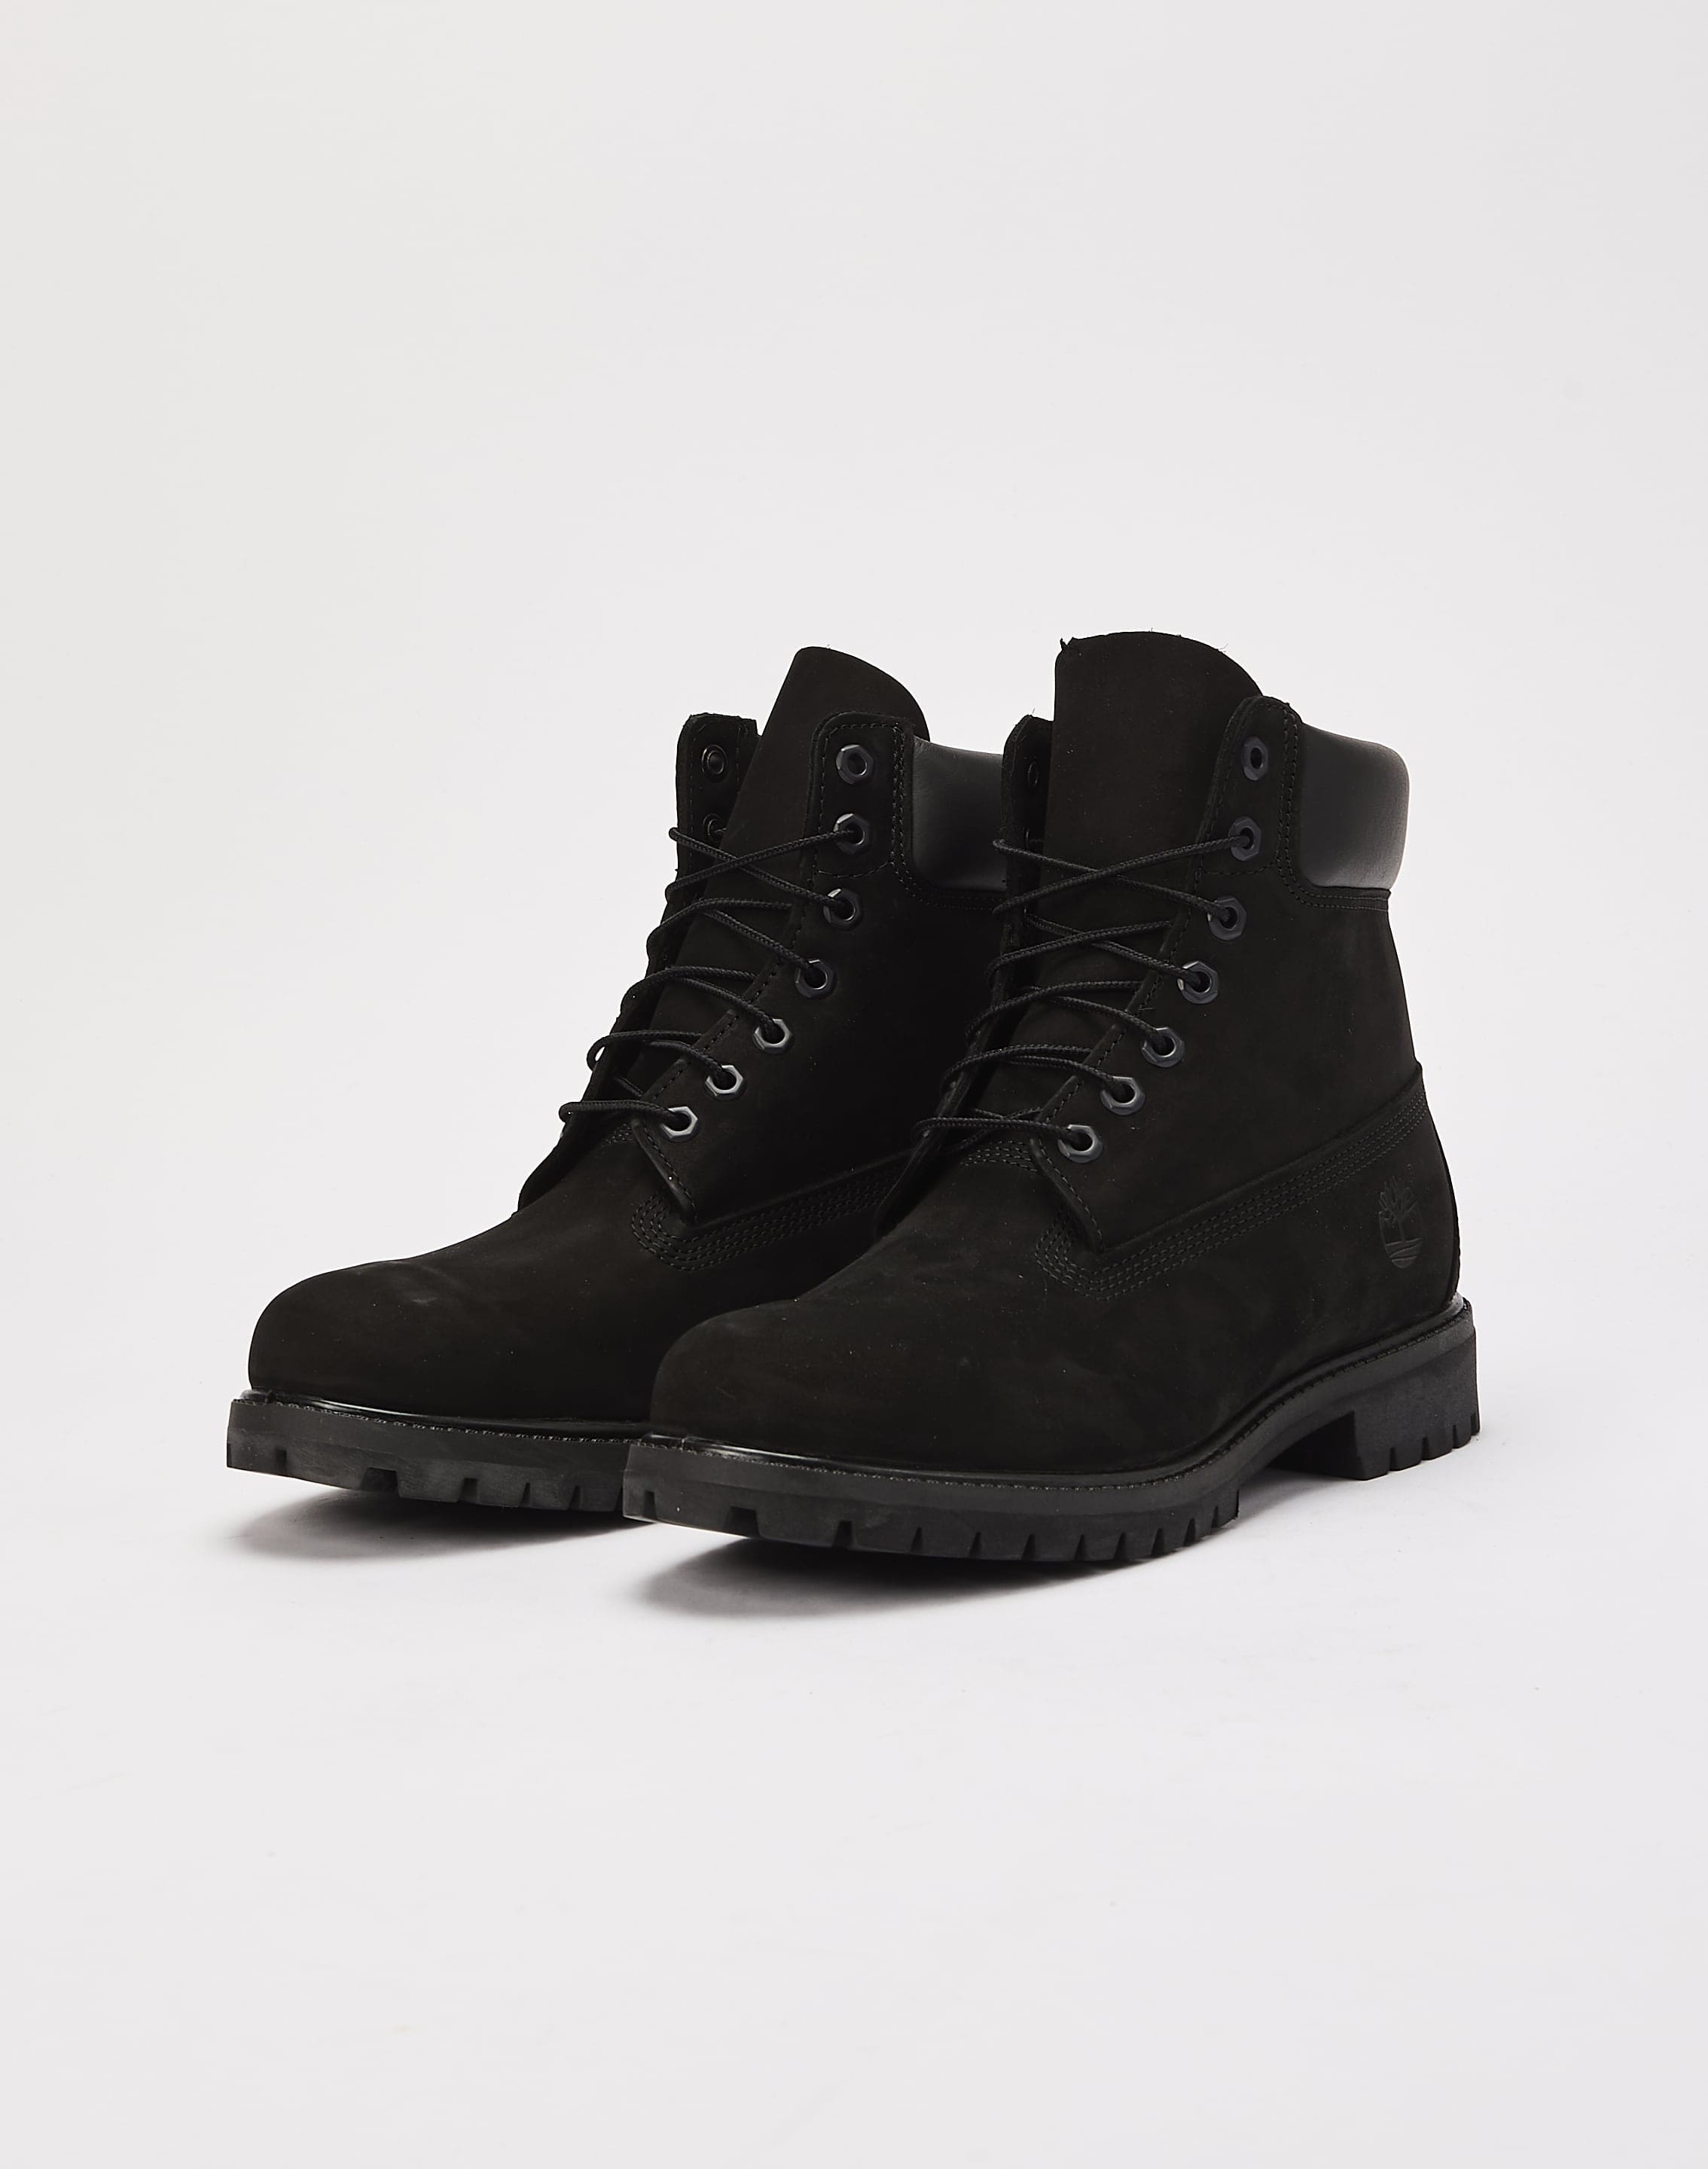 Timberland Premium Waterproof Boots – DTLR